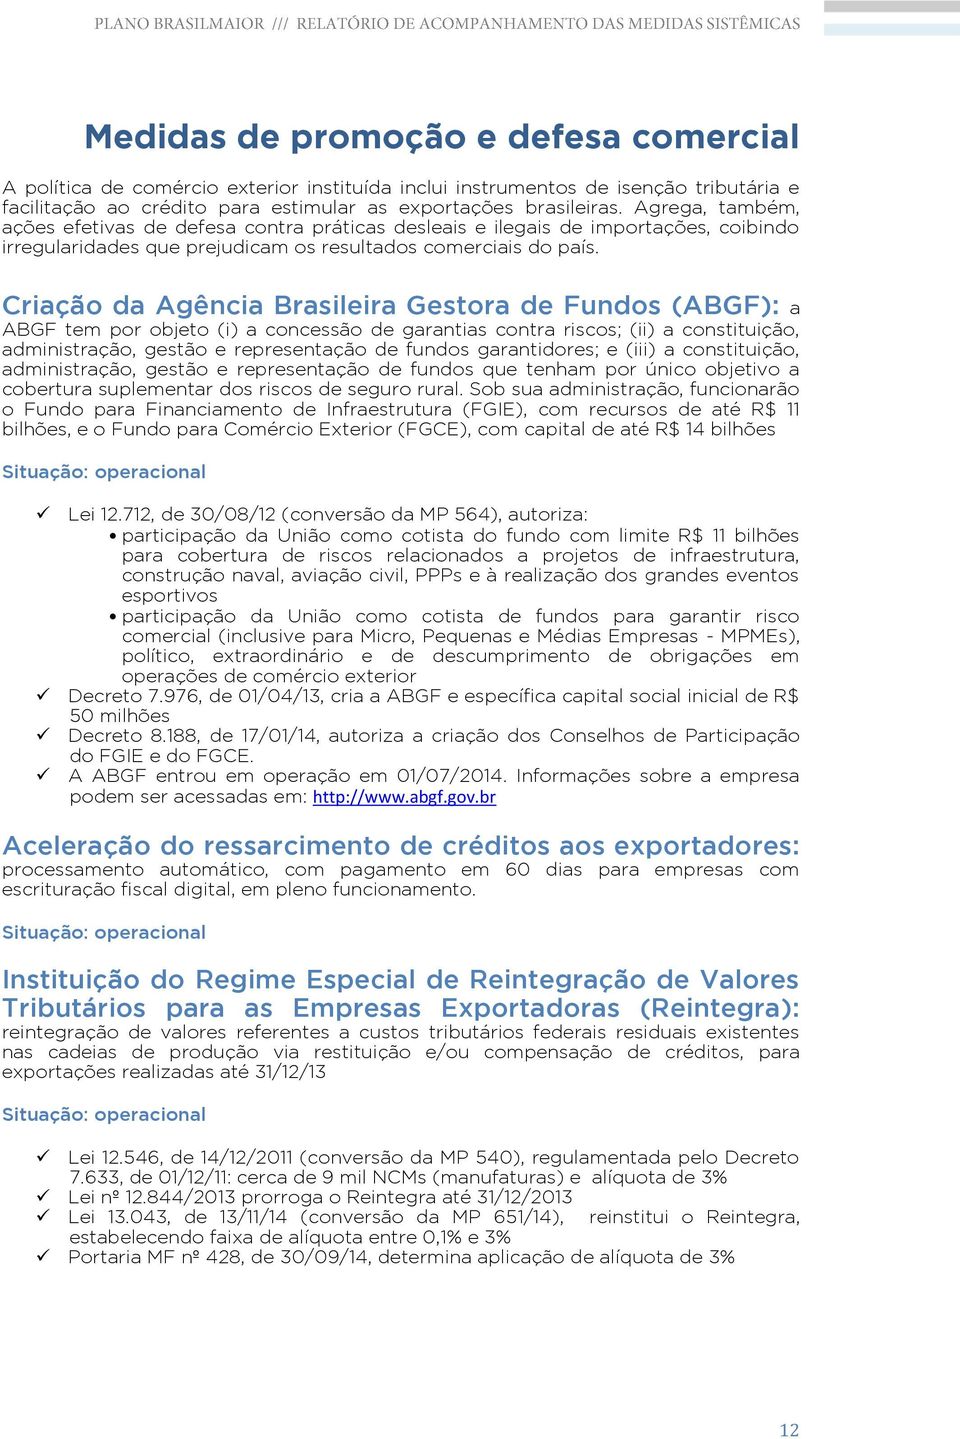 Criação da Agência Brasileira Gestora de Fundos (ABGF): a ABGF tem por objeto (i) a concessão de garantias contra riscos; (ii) a constituição, administração, gestão e representação de fundos